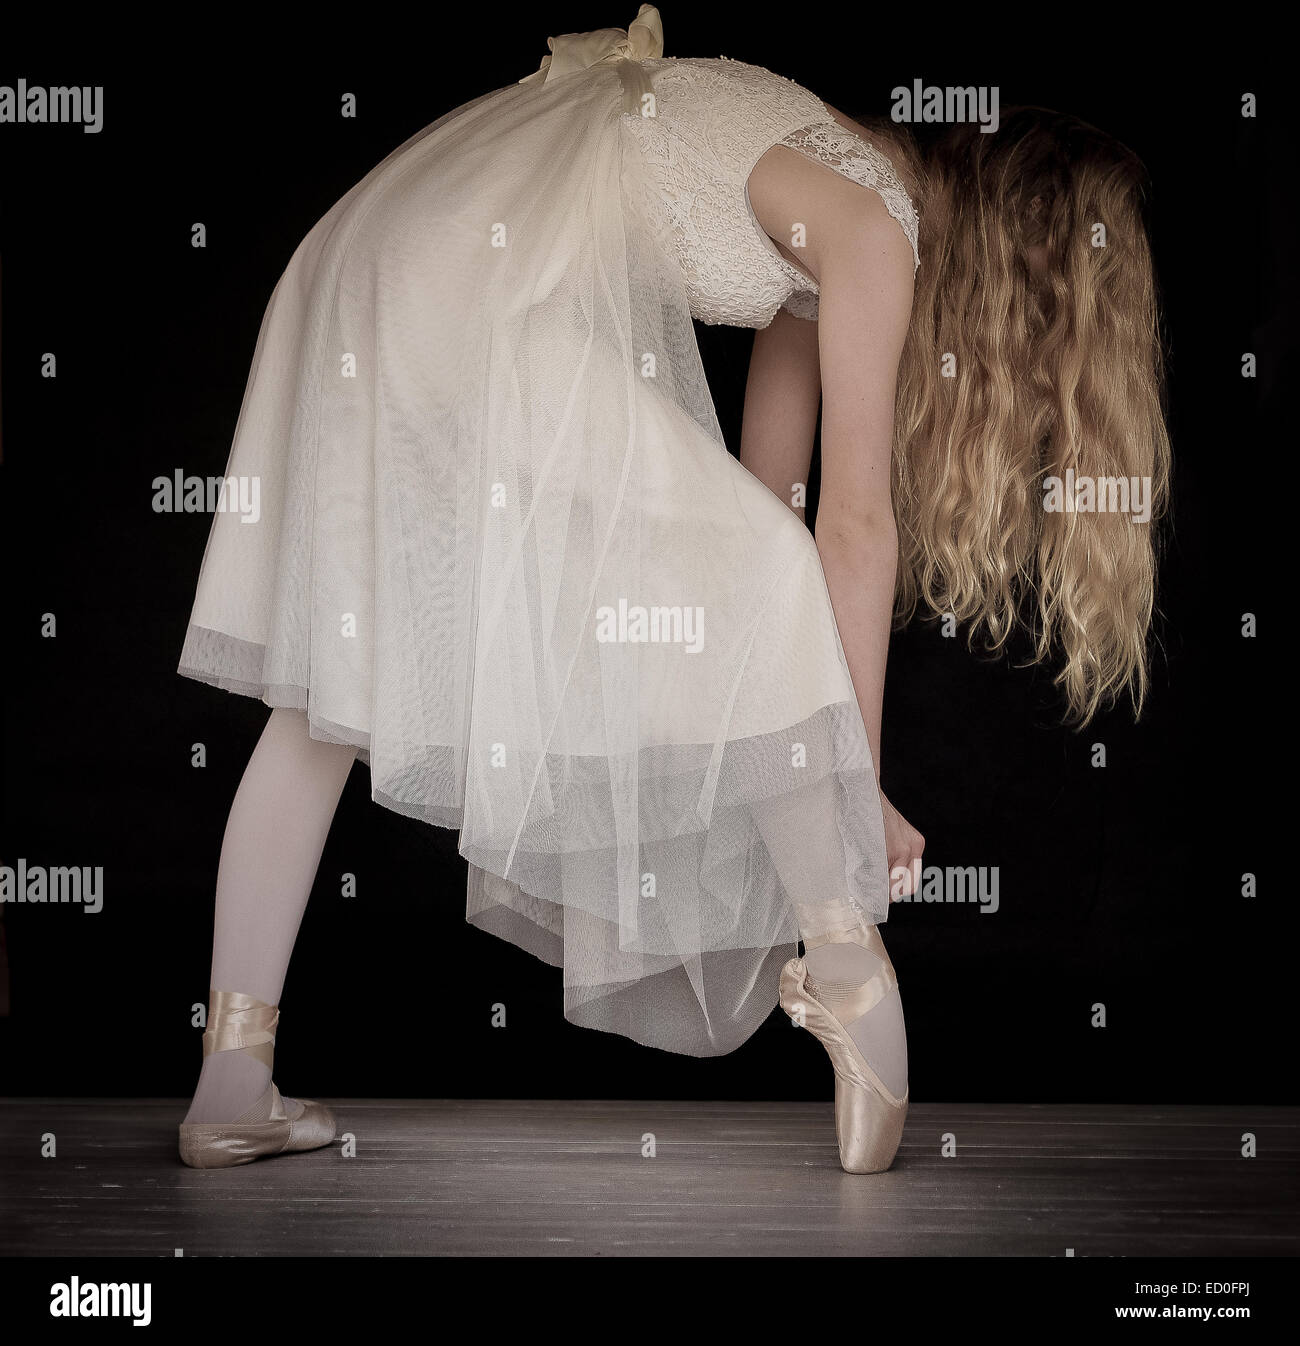 Danseuse de ballet ballet shoes sur ruban de réglage Banque D'Images